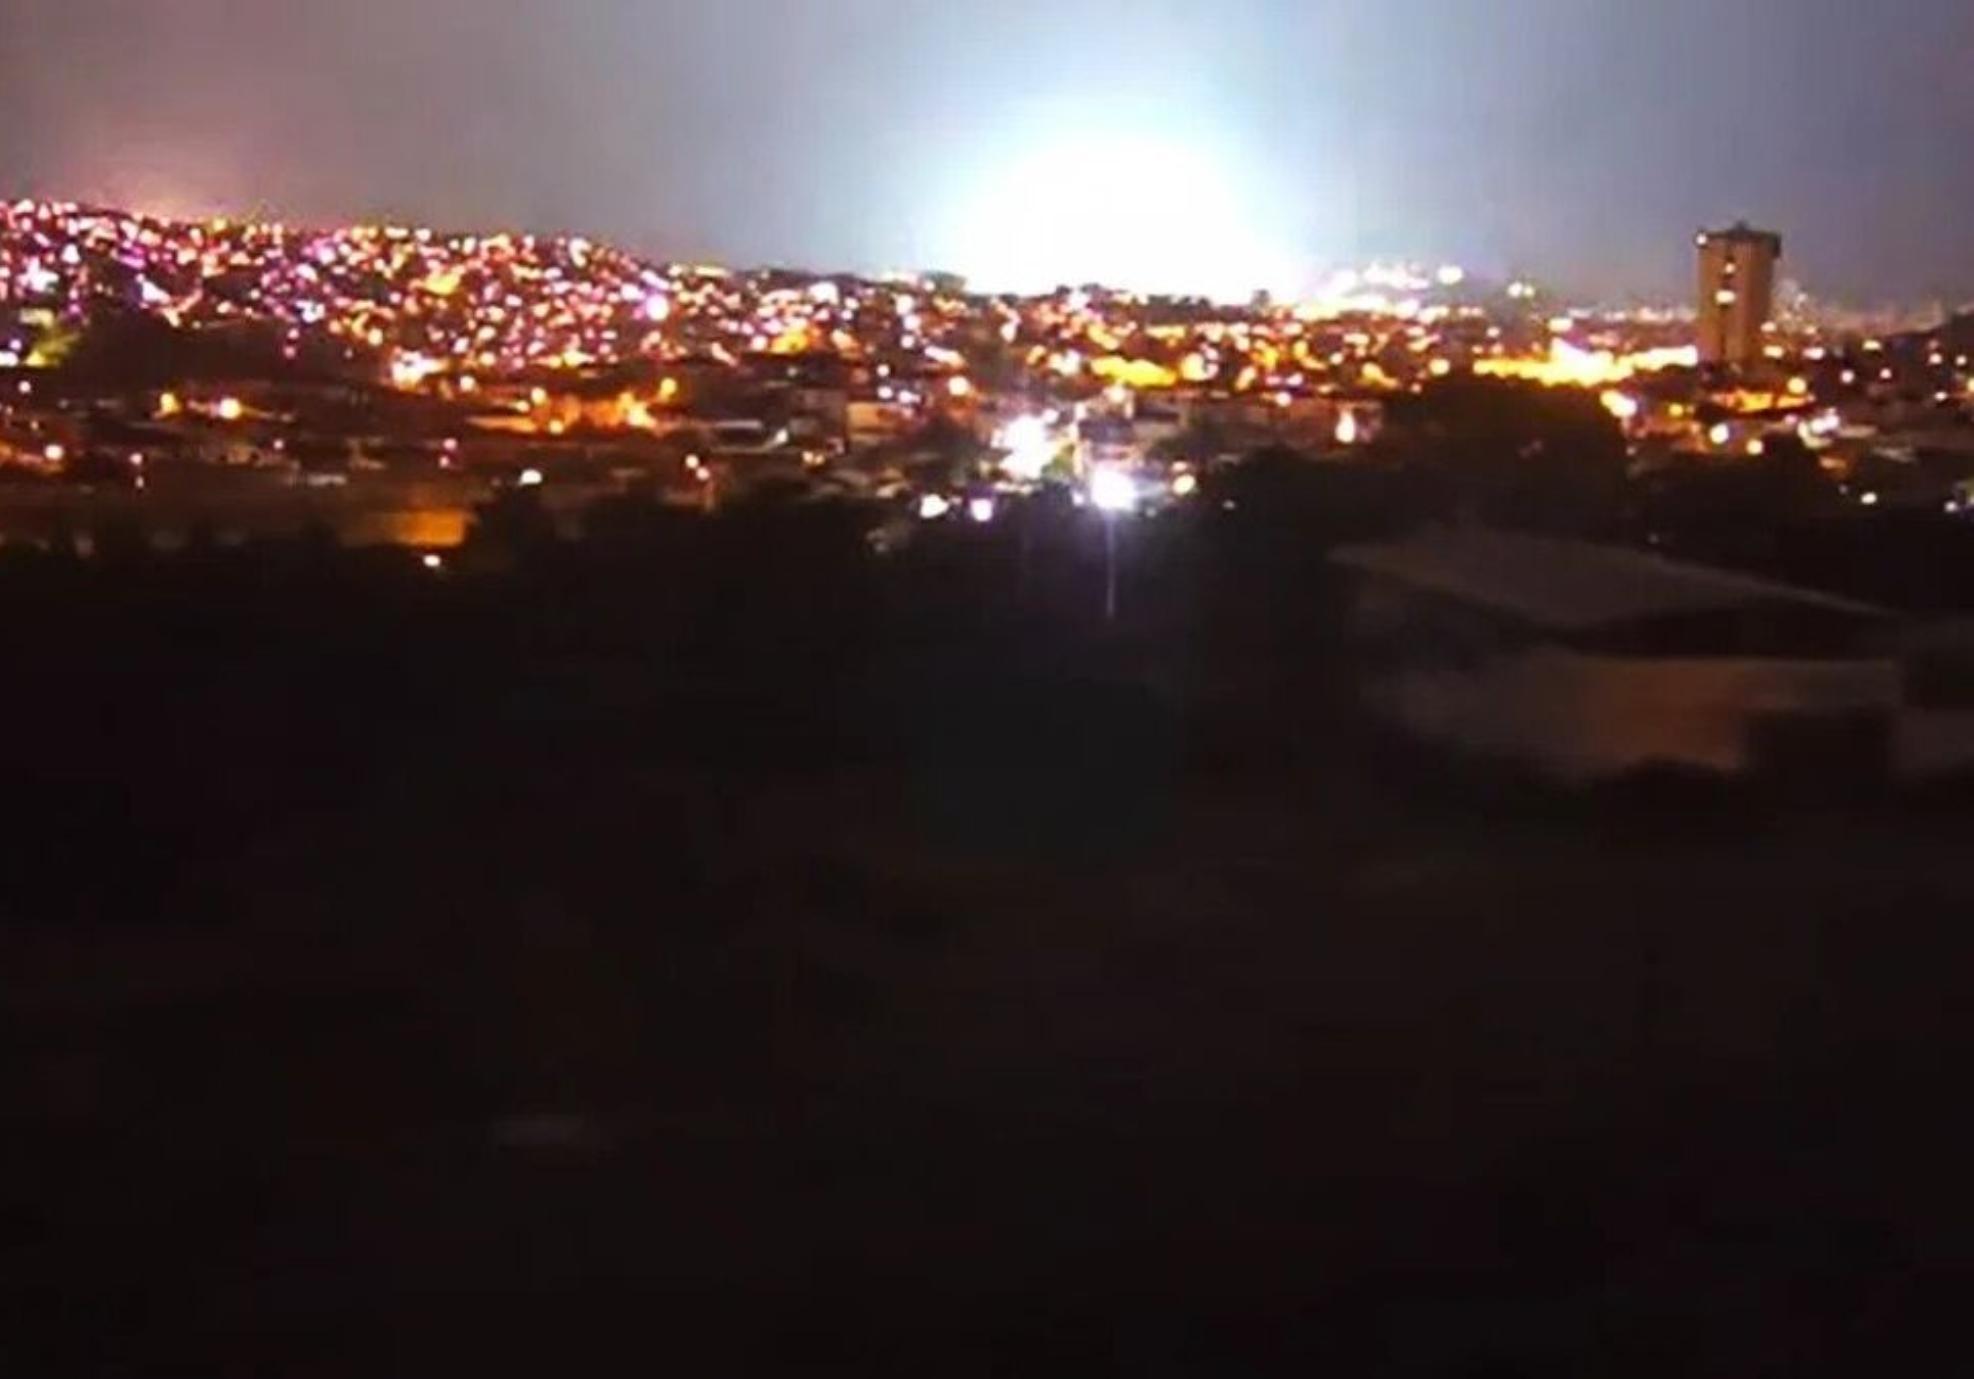 Σεισμικά φώτα: Οι παράξενες λάμψεις στον ουρανό πριν το σεισμό του Μαρόκου που χρονολογούνται από την αρχαία Ελλάδα